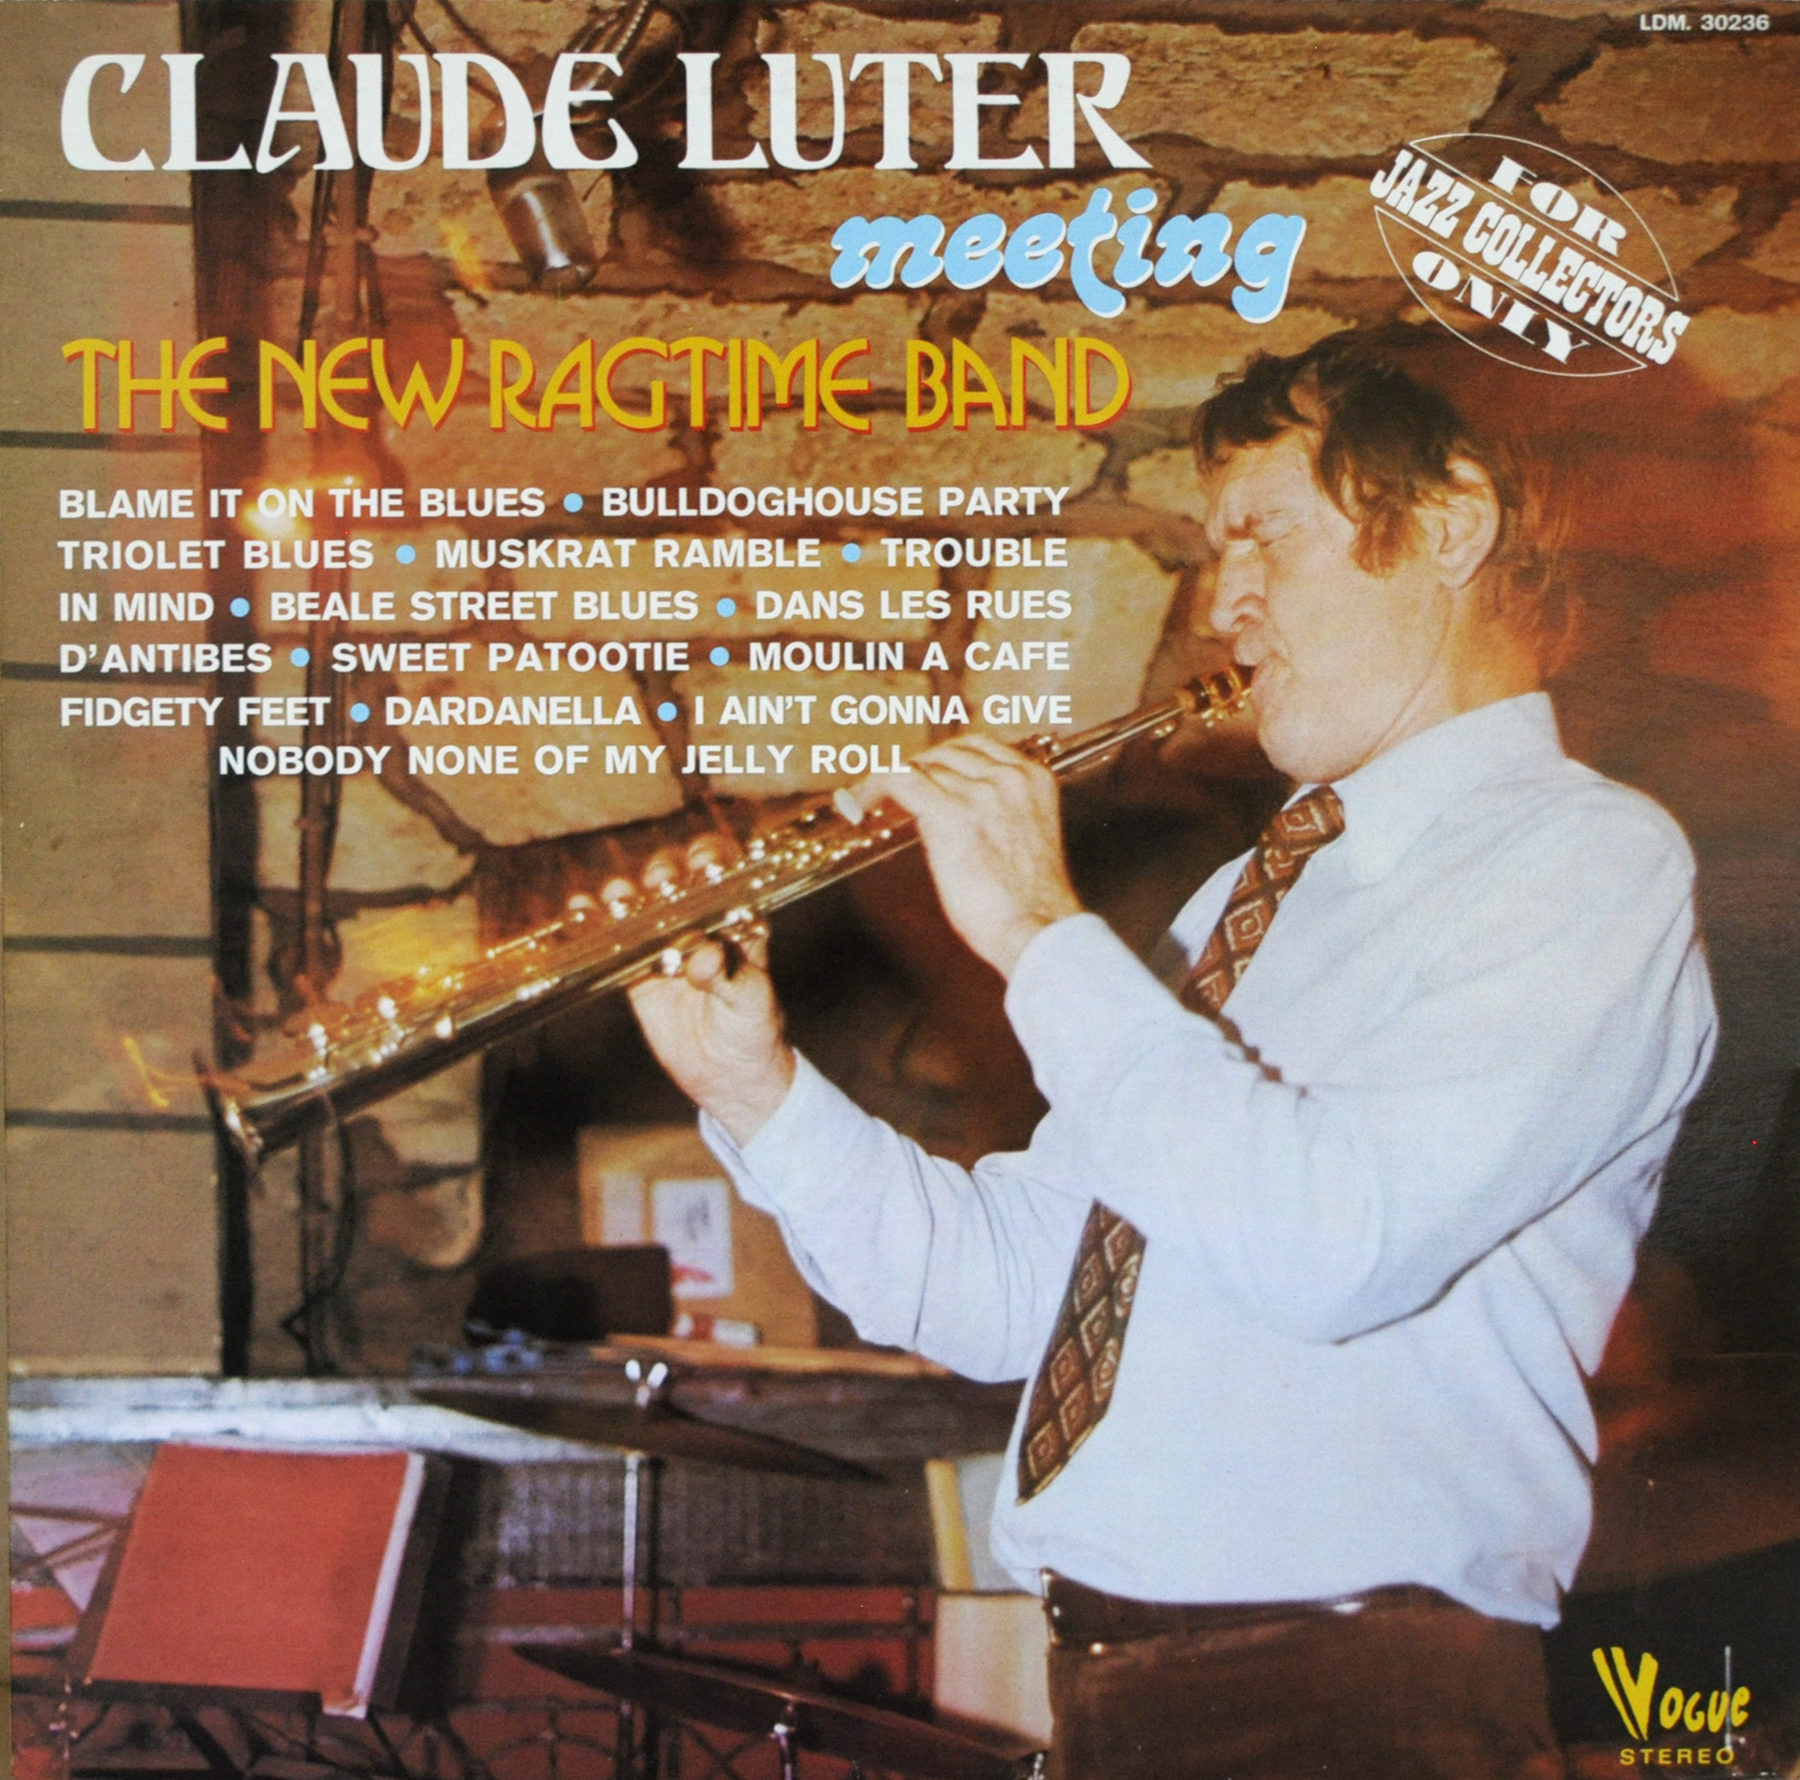 Acheter disque vinyle Claude LUTER et The New Ragtime Band Claude Luter meeting The New Ragtime Band a vendre